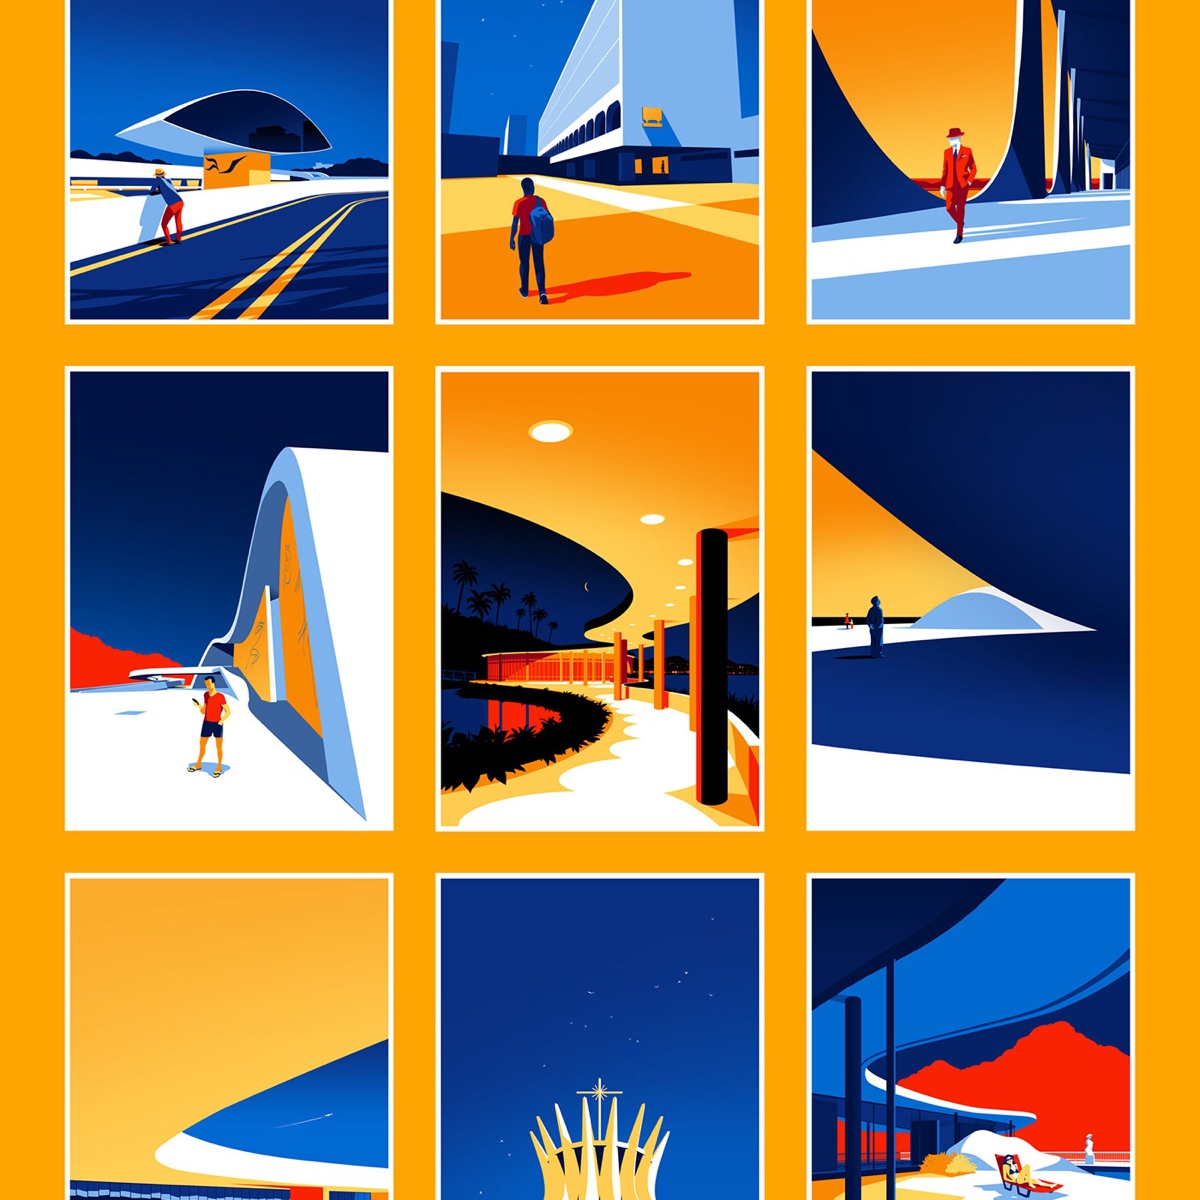 Ilustrações minimalistas celebram a beleza da arquitetura moderna de Oscar Niemeyer